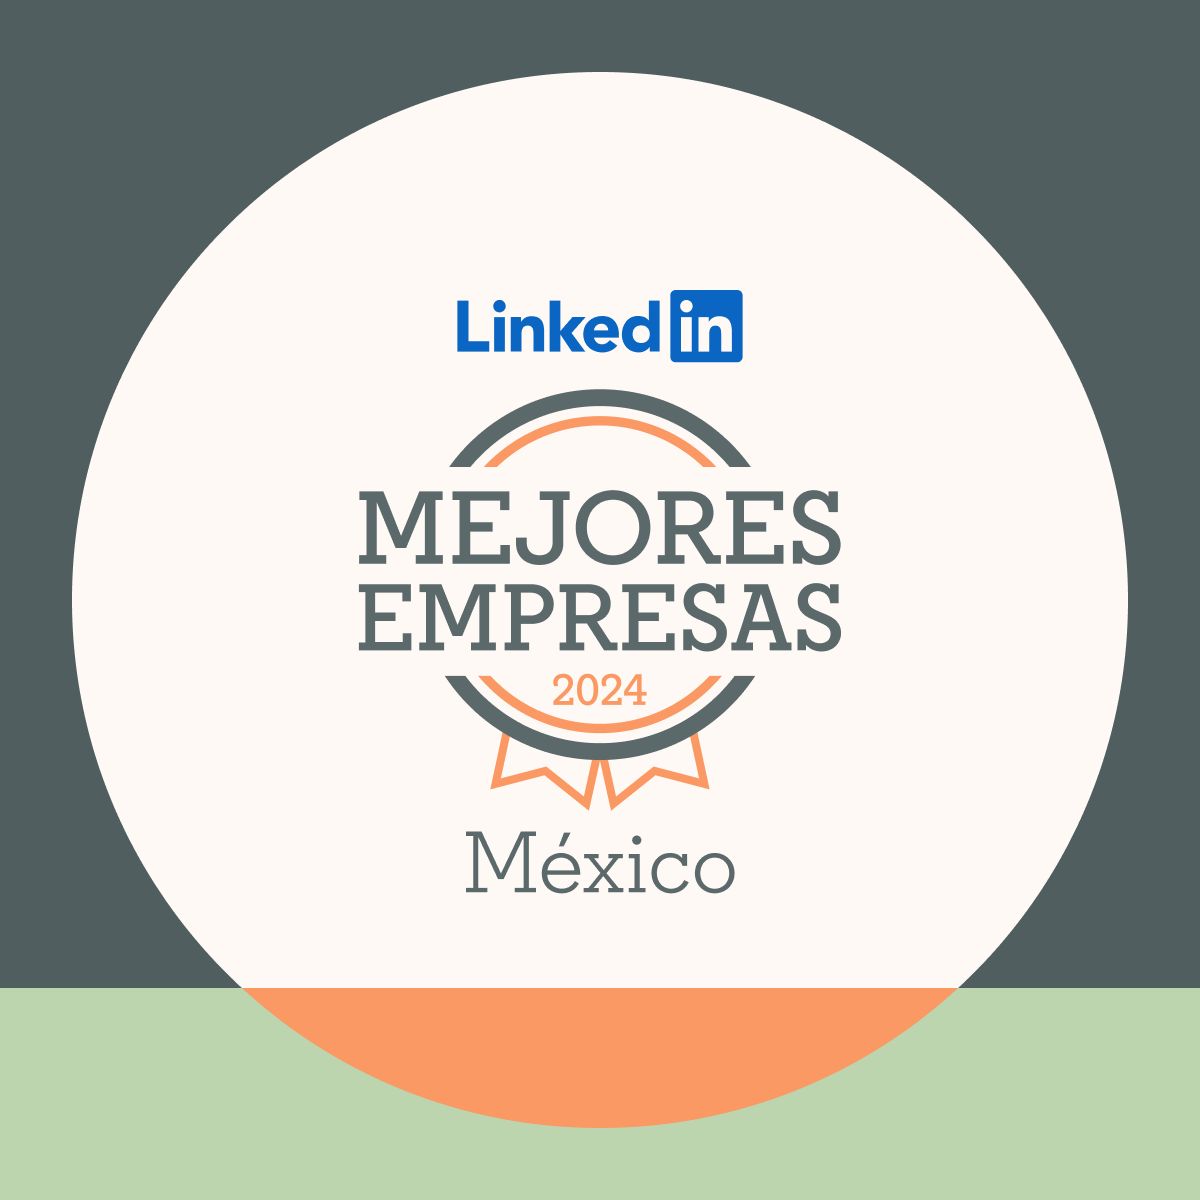 Banorte, una de las 25 Mejores Empresas de LinkedIn 2024 en México. ¡Sigamos avanzando juntos!